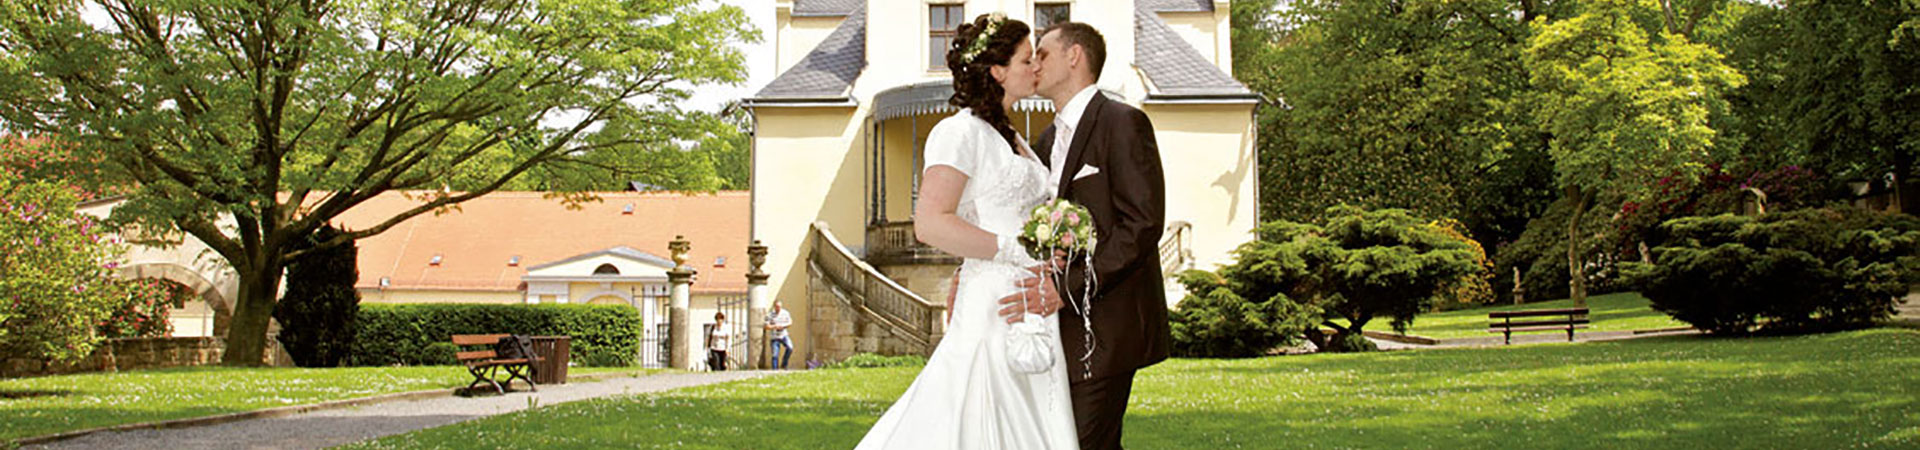 Schloss Burgk – Heiraten in fürstlichem Ambiente in Freital